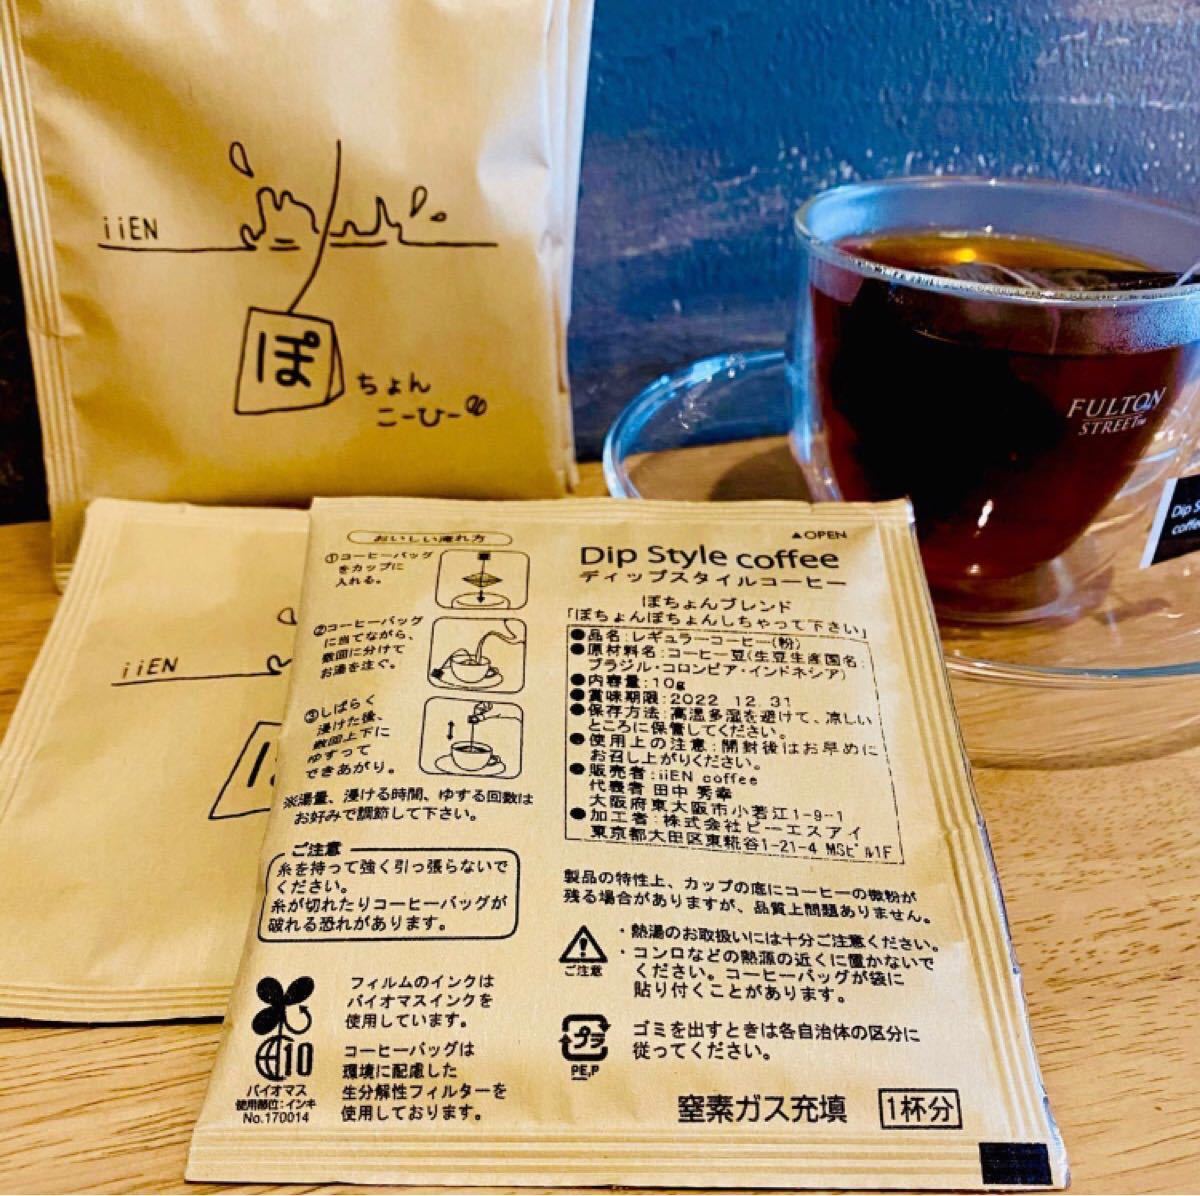 ドリップバッグ コーヒー 24個セット ぽちょんこーひー iiENcoffee 珈琲 Dip Style